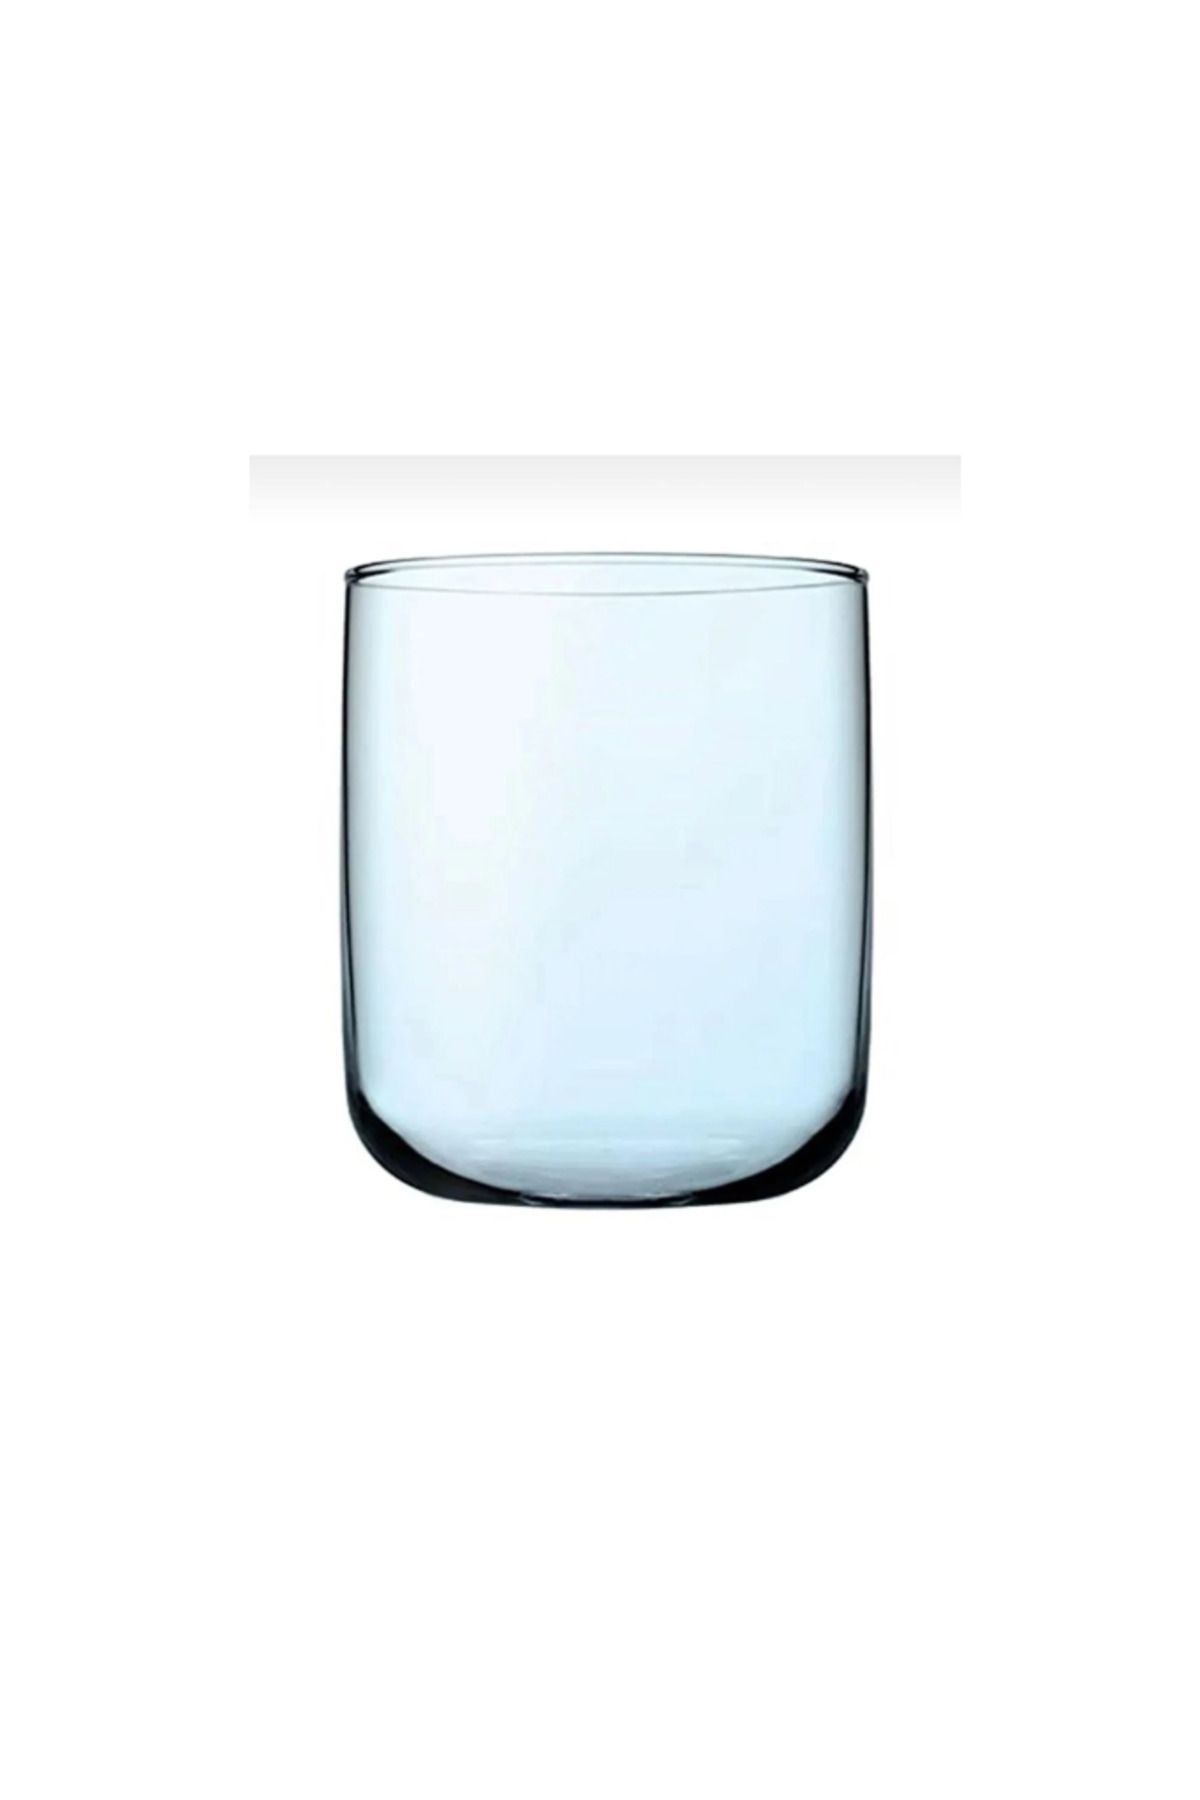 Paşabahçe 420112t Iconic 6'lı Meşrubat Su Bardağı 280 Cc -turkuaz